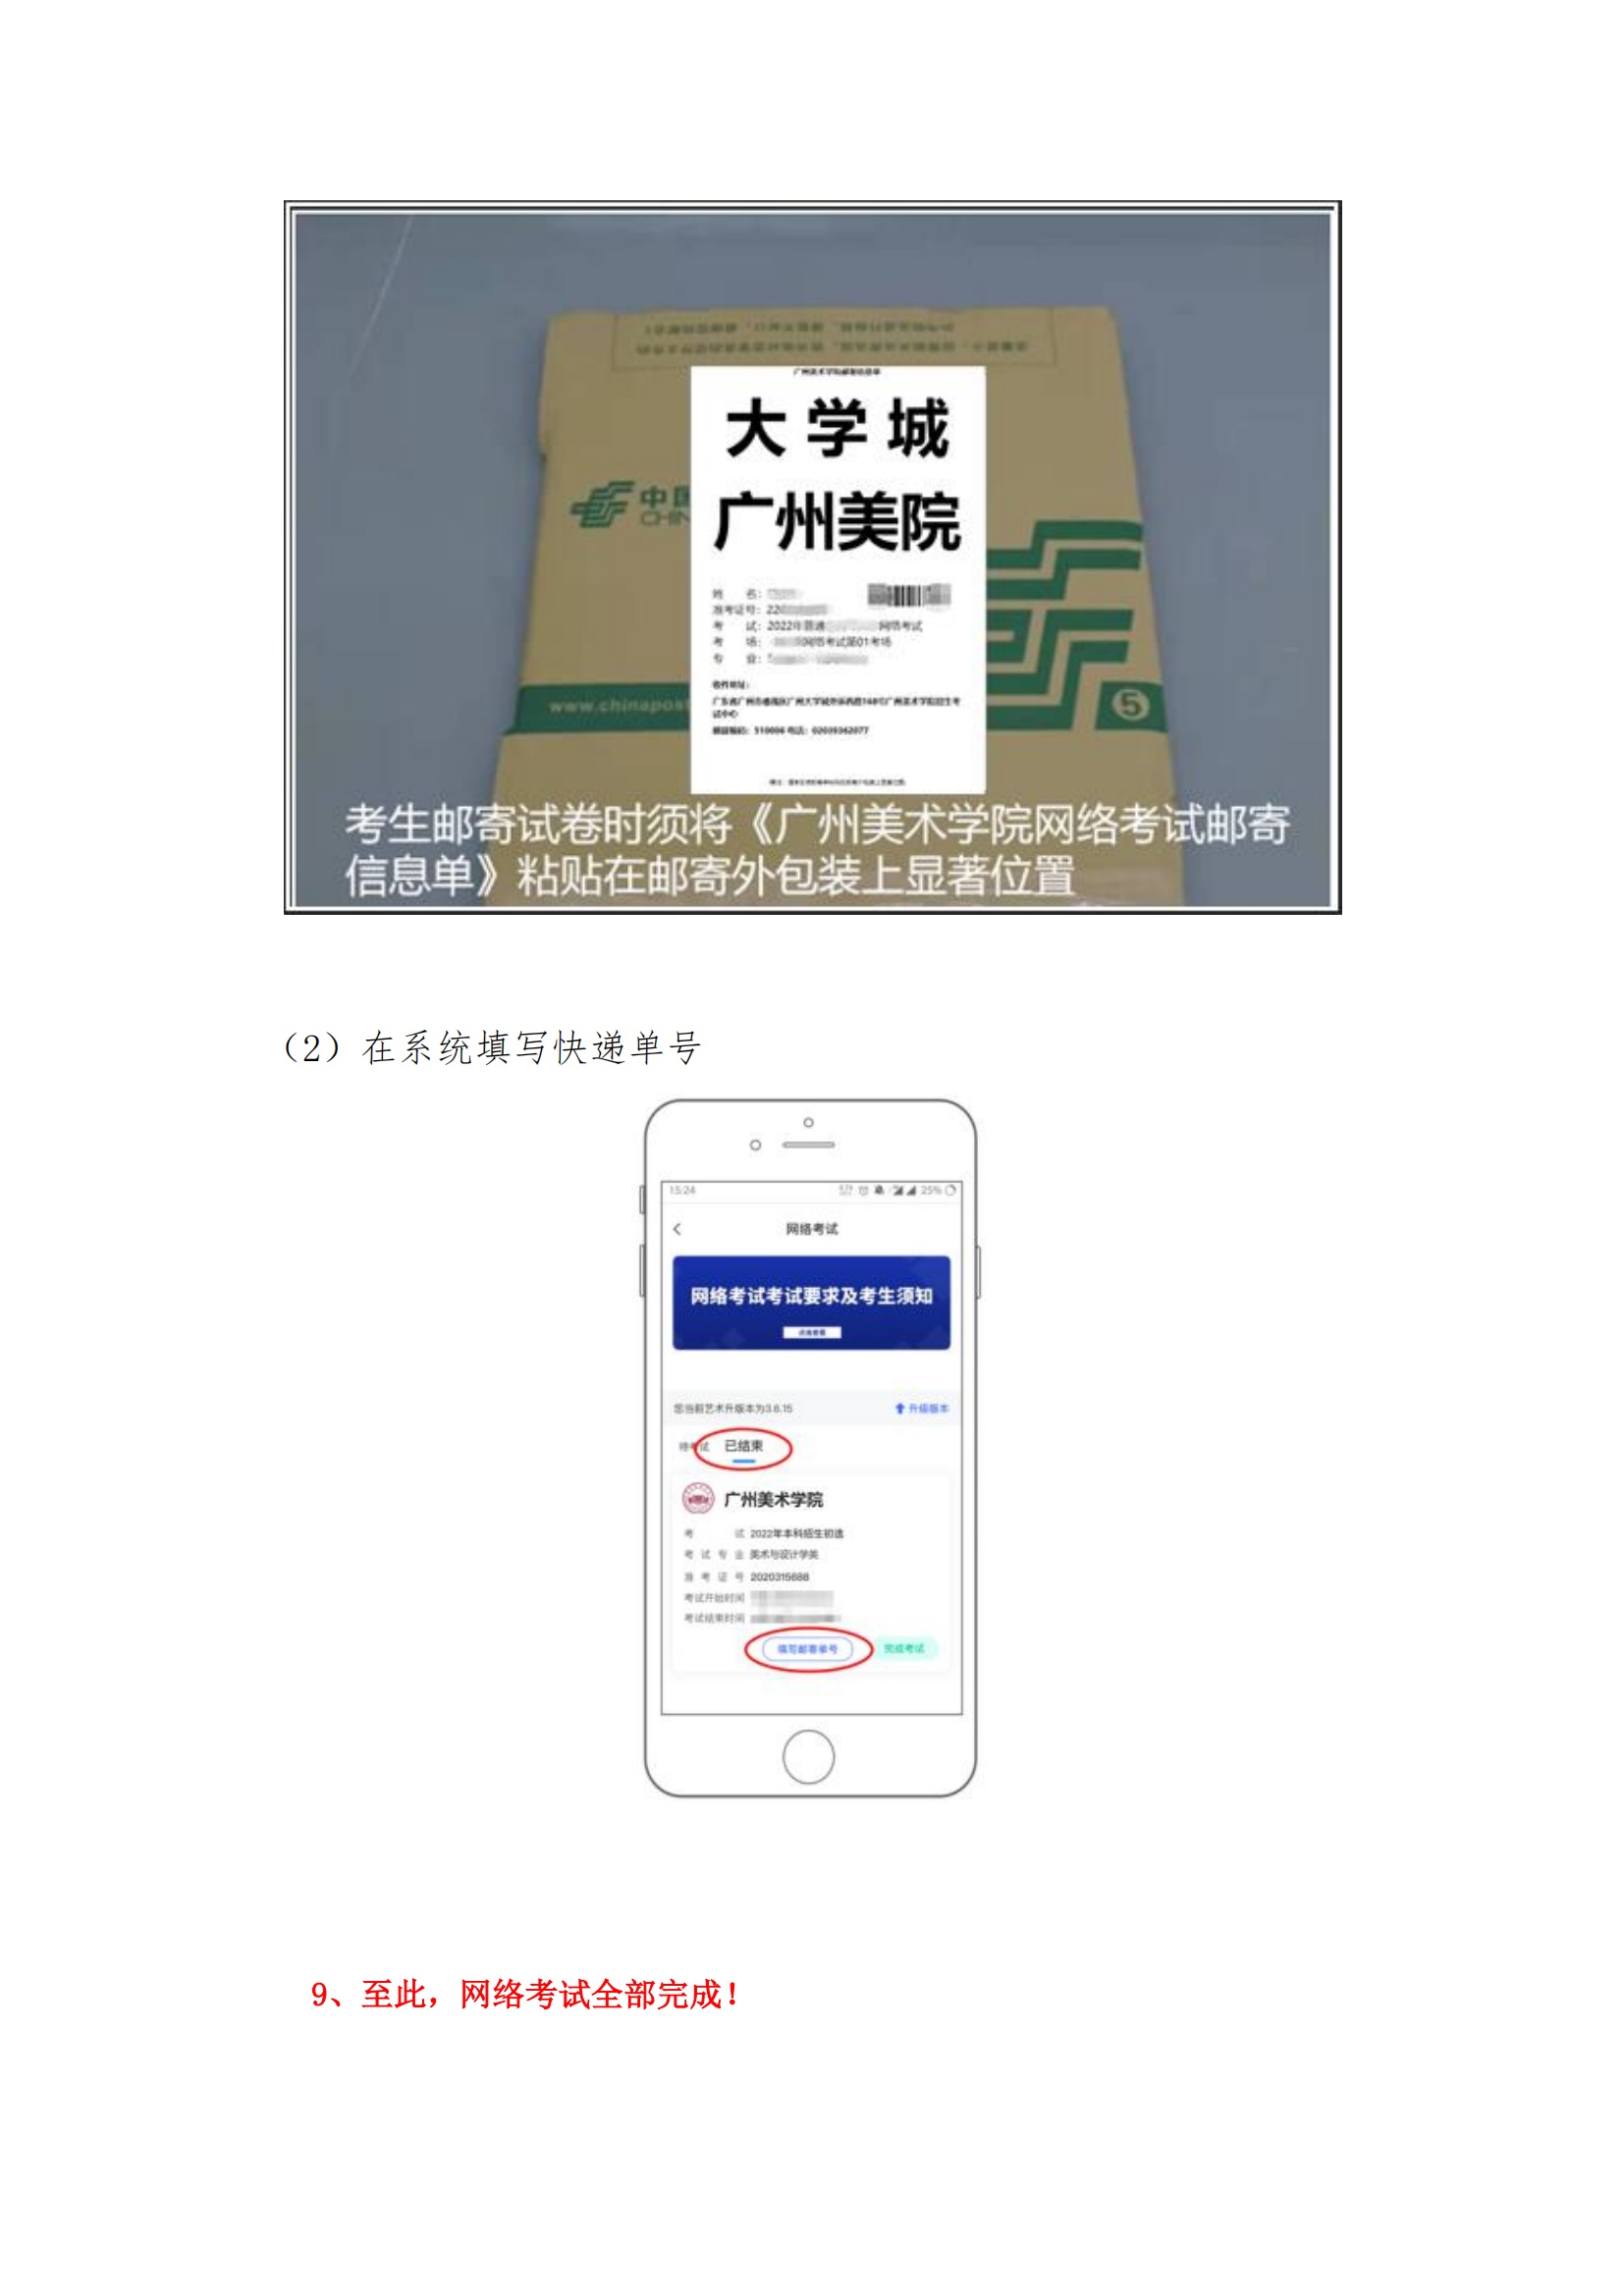 附件1：广州美术学院艺术升APP网络考试操作说明_14.png